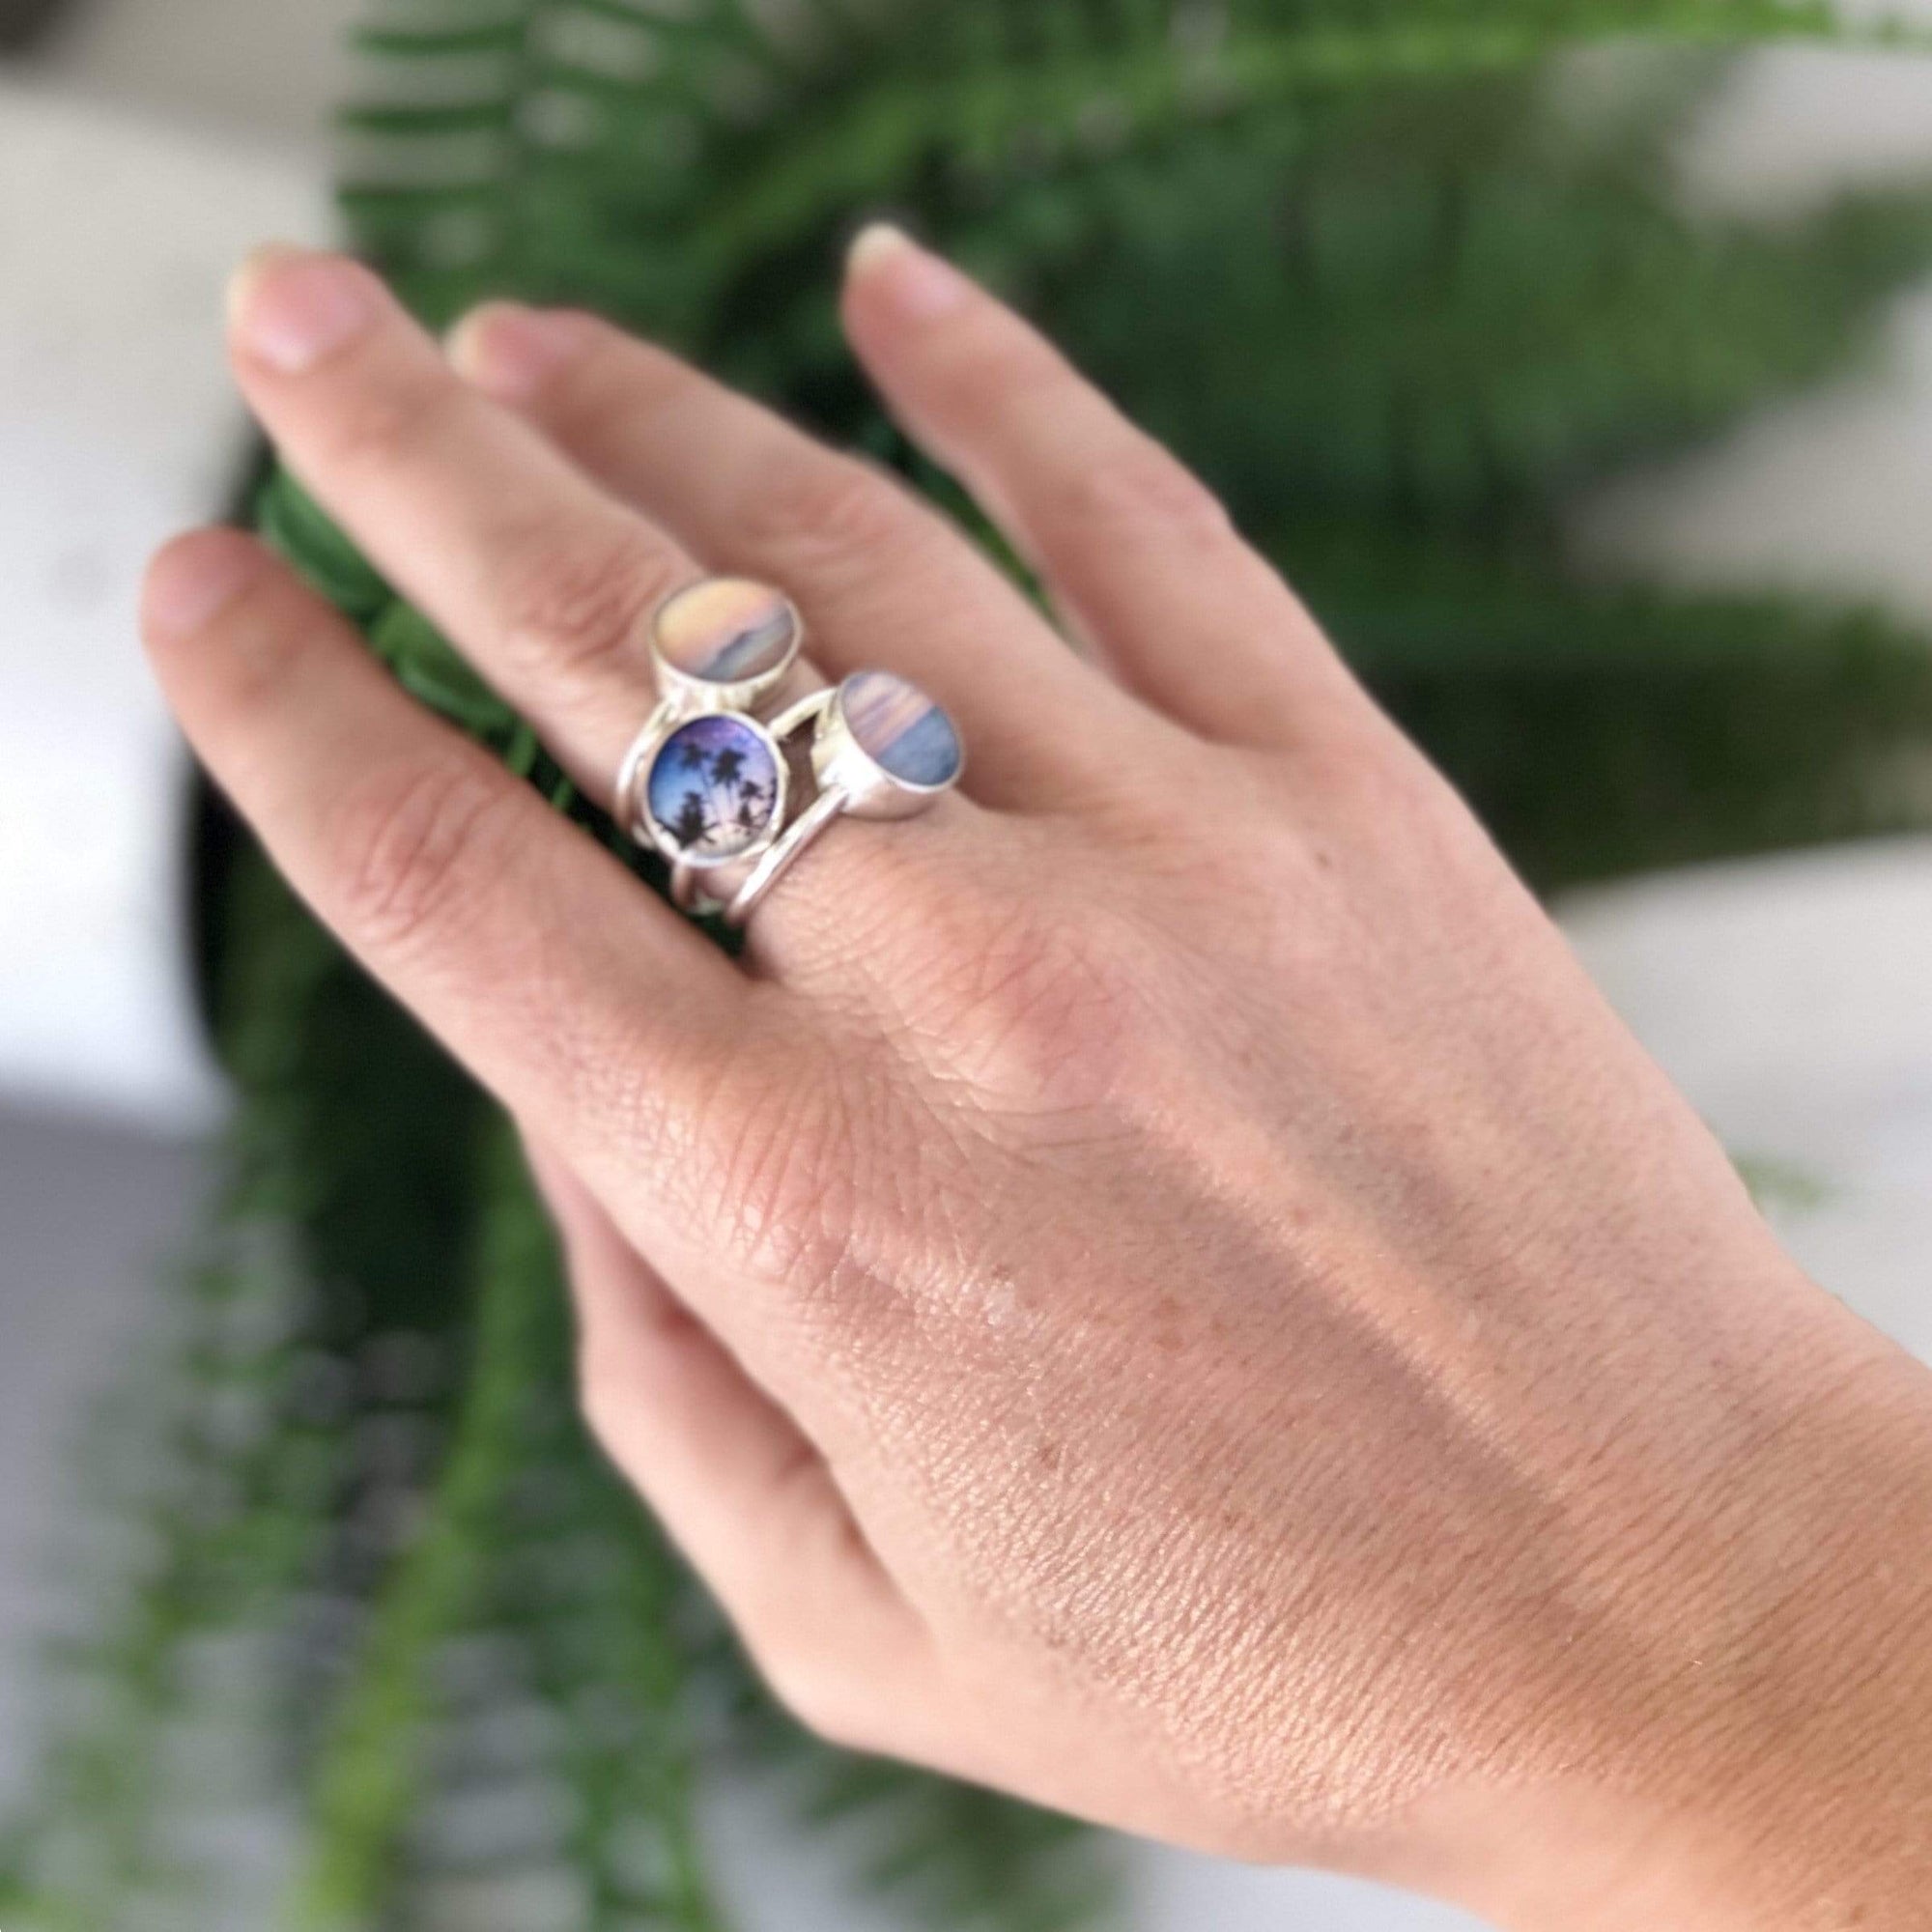 Oahu's Diamond Head Ring by Foterra Jewelry